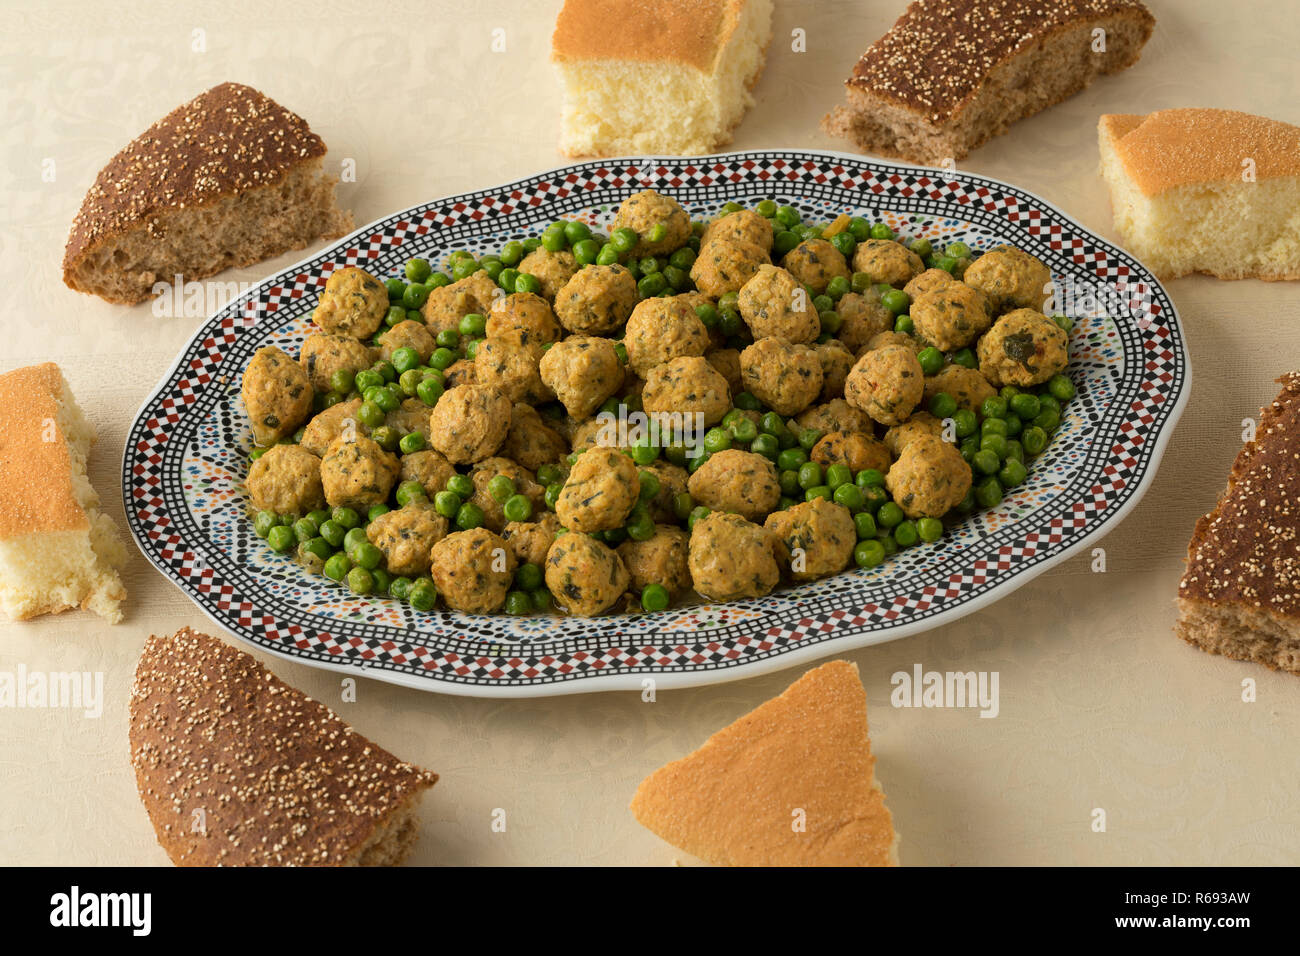 Im marokkanischen Stil Hackfleisch Huhn Kugeln, grüne Erbsen und Brot für das Abendessen Stockfoto